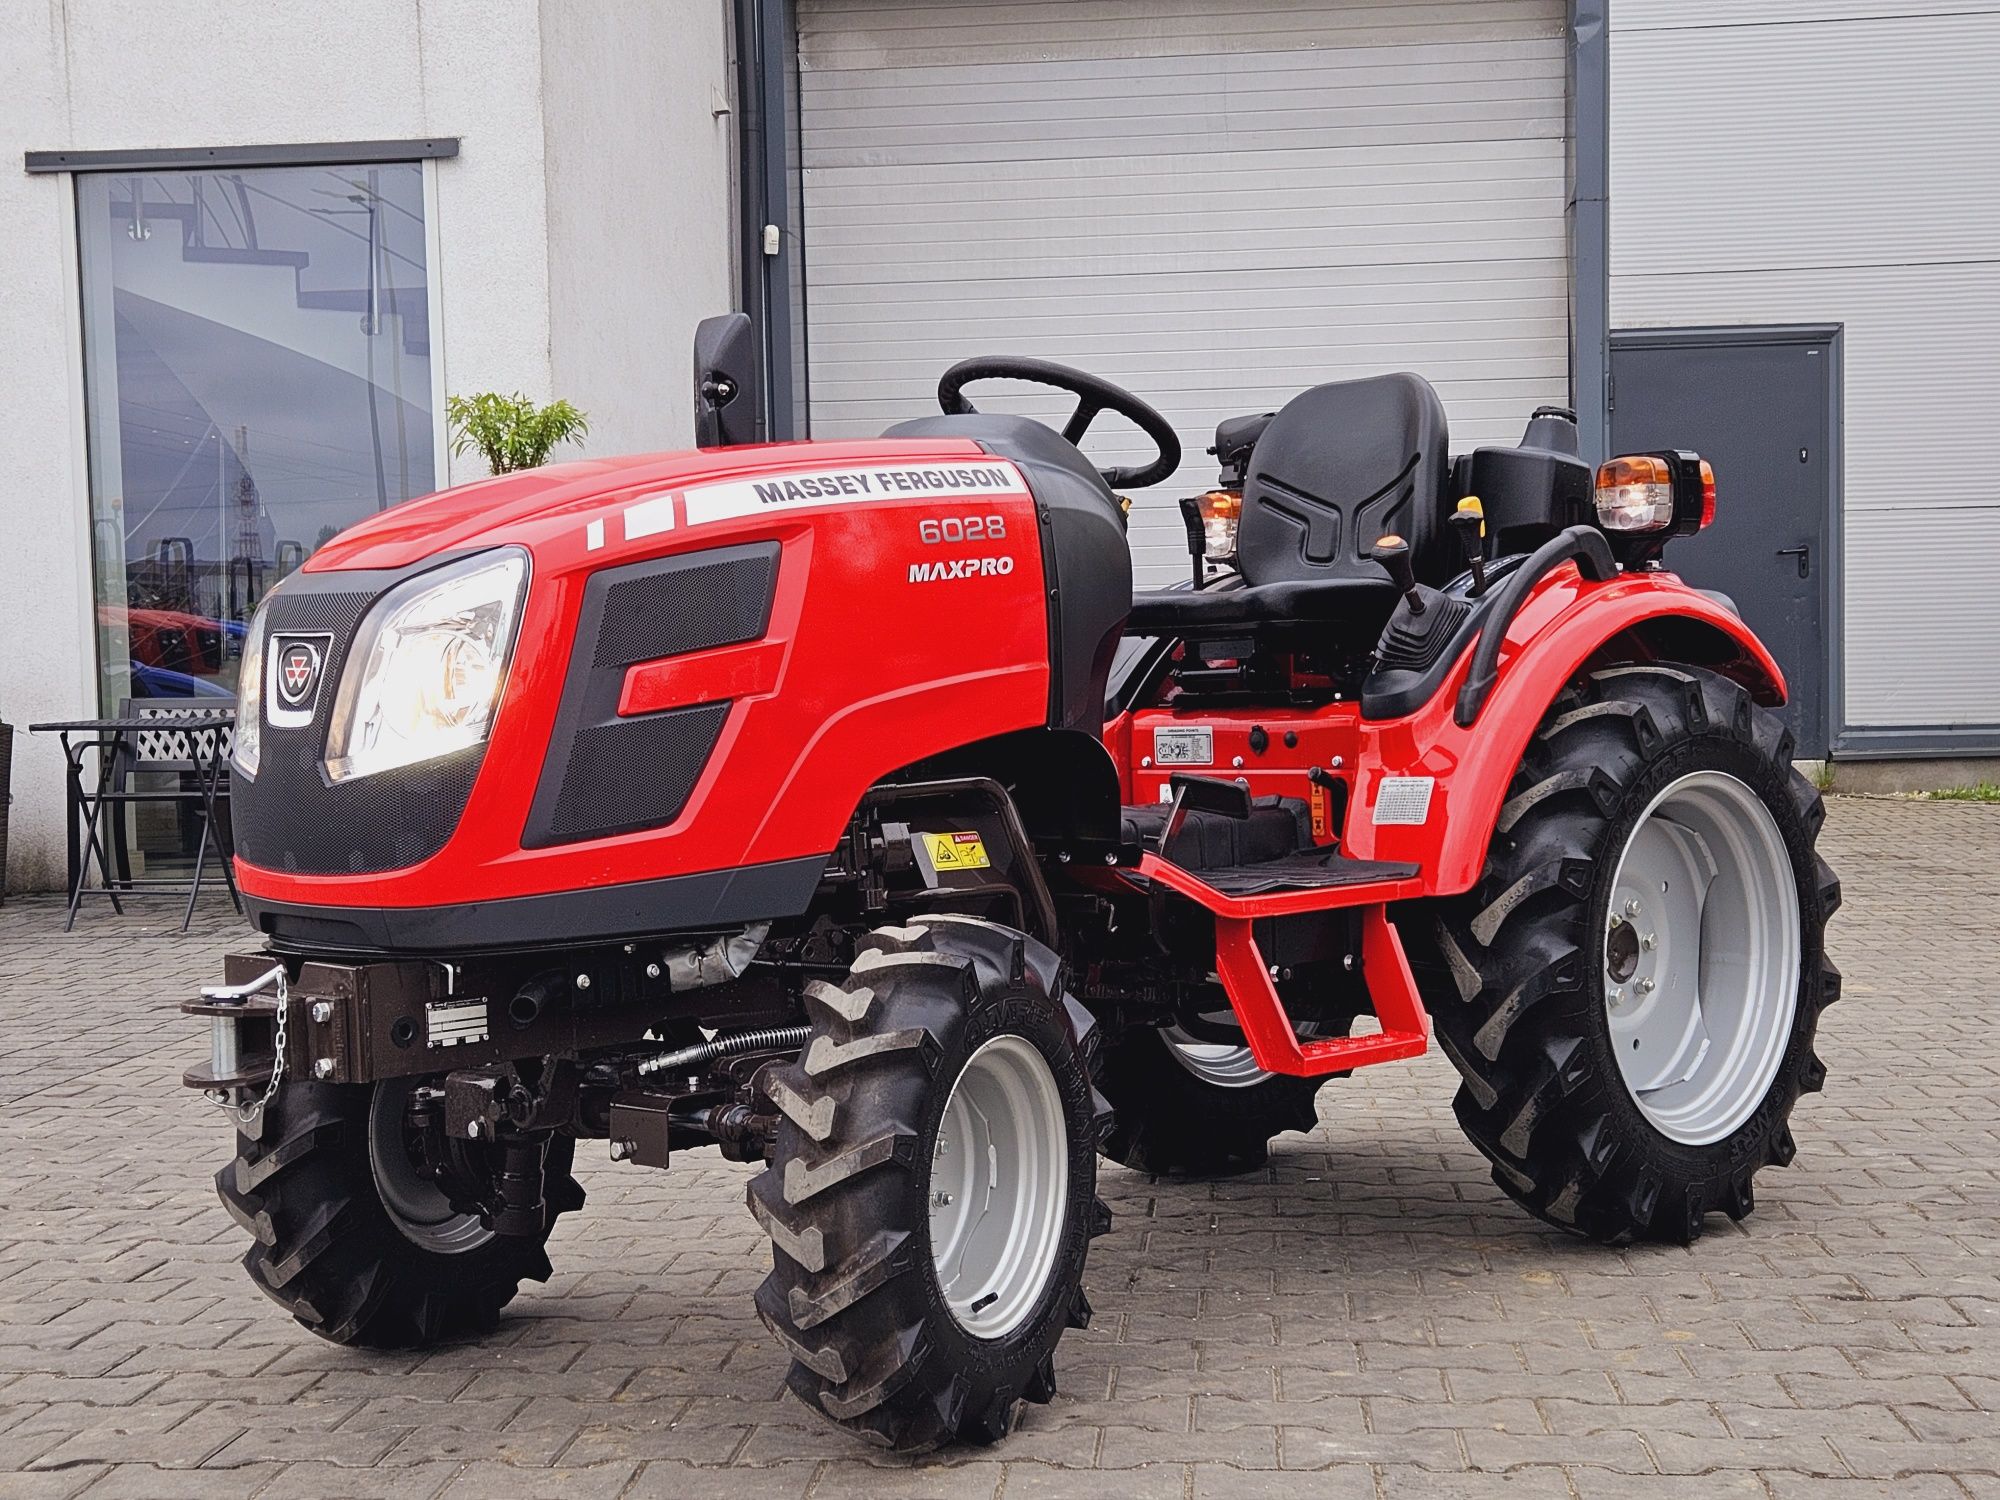 Nowy Traktorek Massey Ferguson 6028. Mini traktorek,ciagniczek traktor